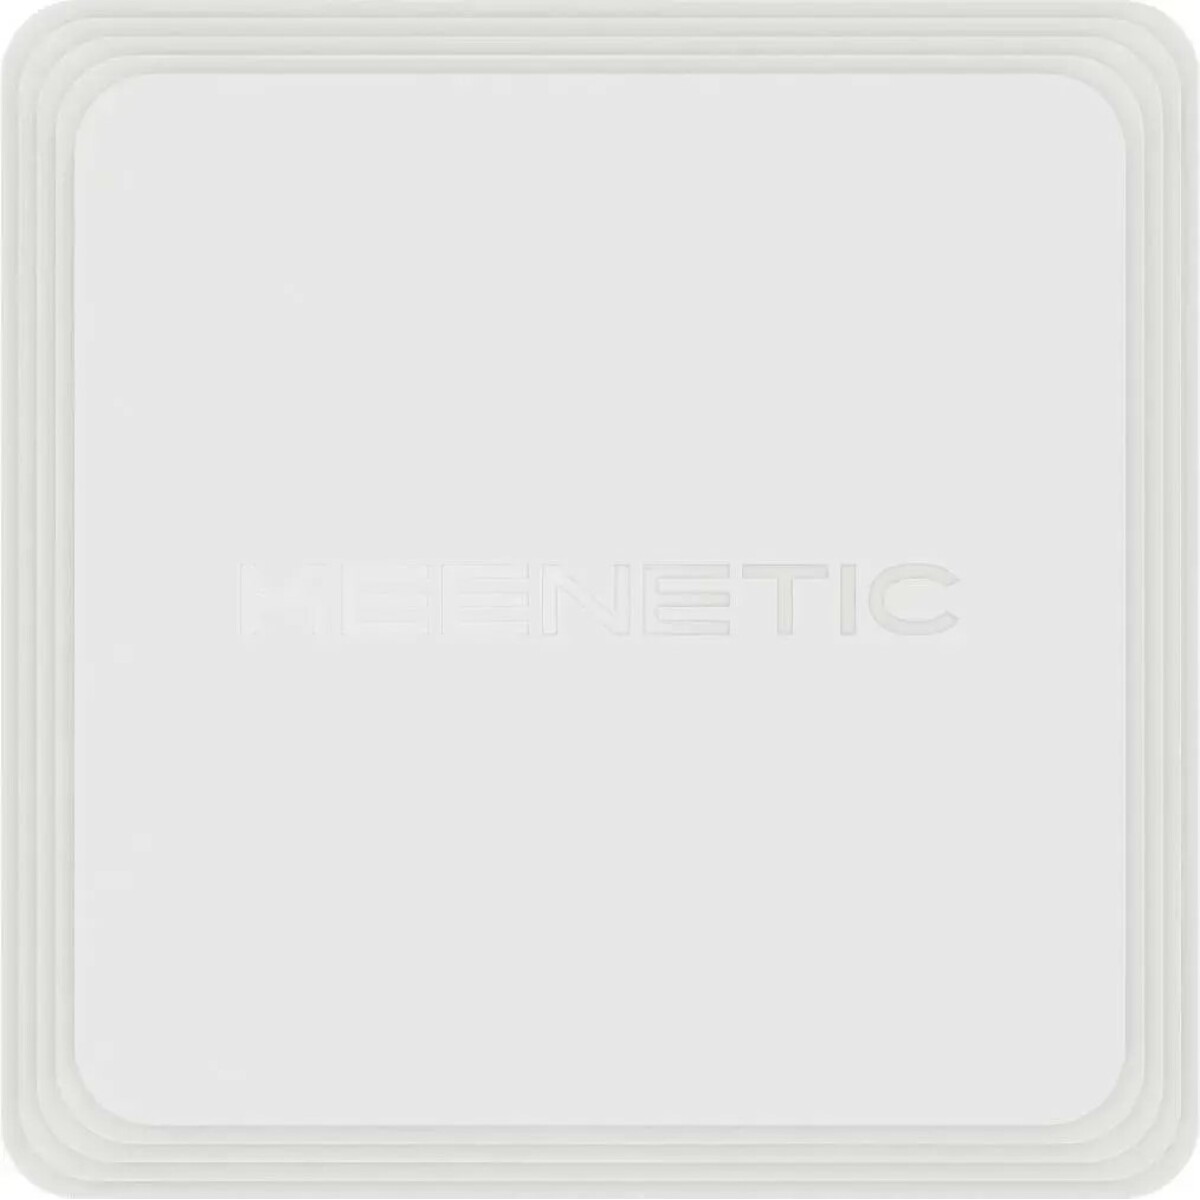 Точка доступа Keenetic Orbiter Pro 4-Pack (Цвет: White)